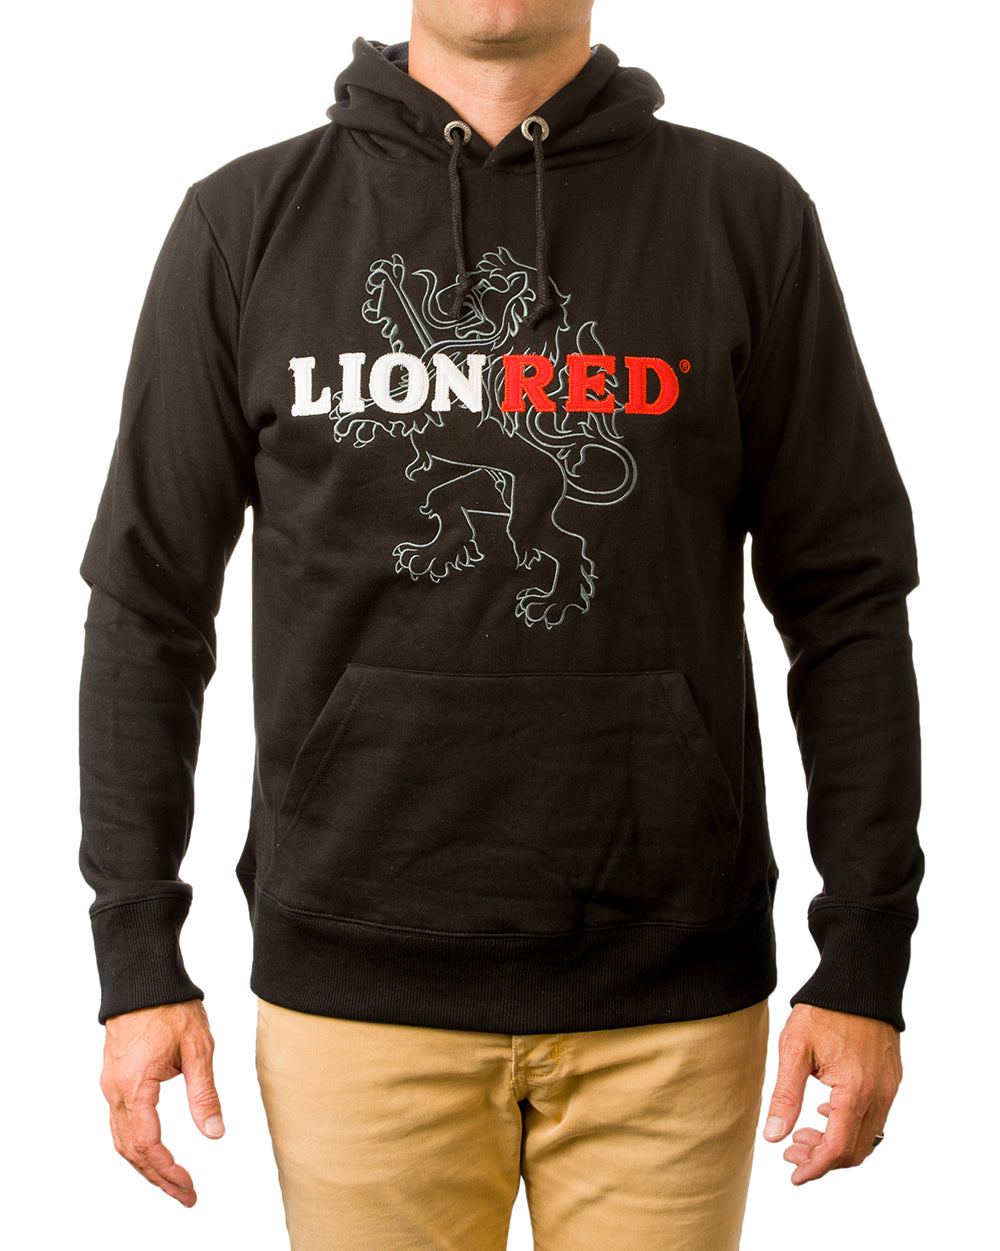 Lion Red Hoodie - Wear It Proud